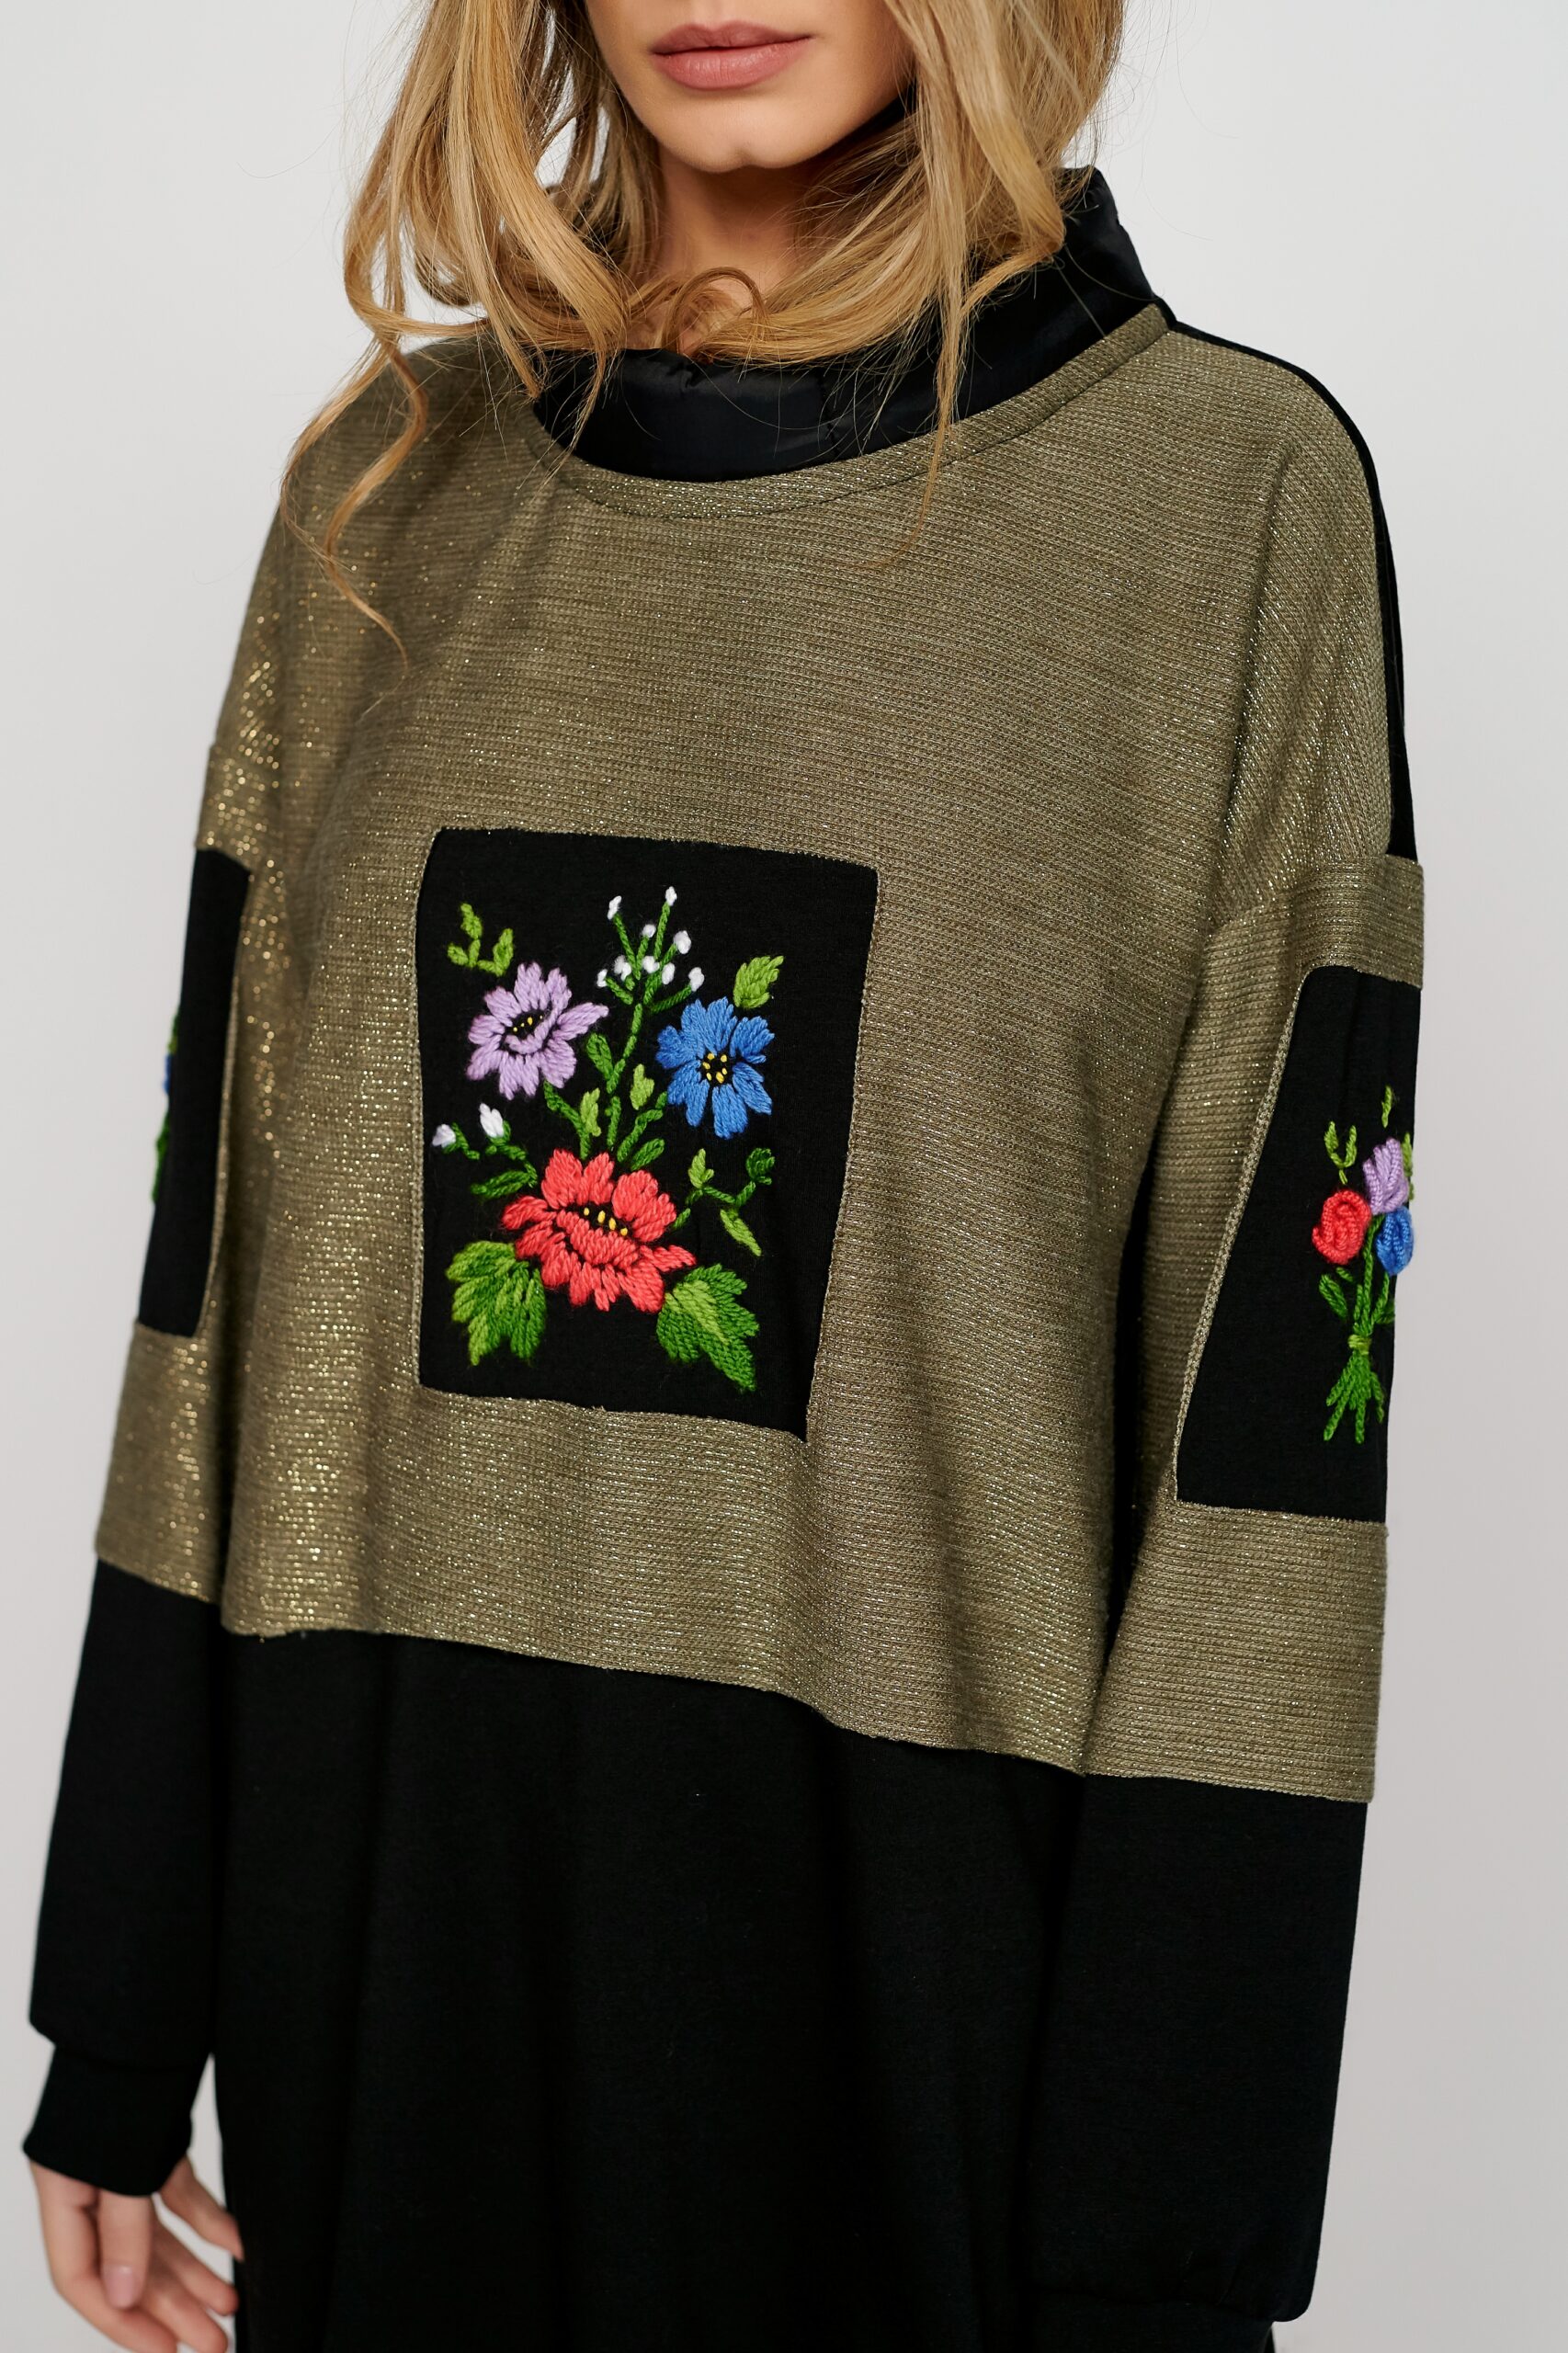 Dress ERMAN AU. Natural fabrics, original design, handmade embroidery